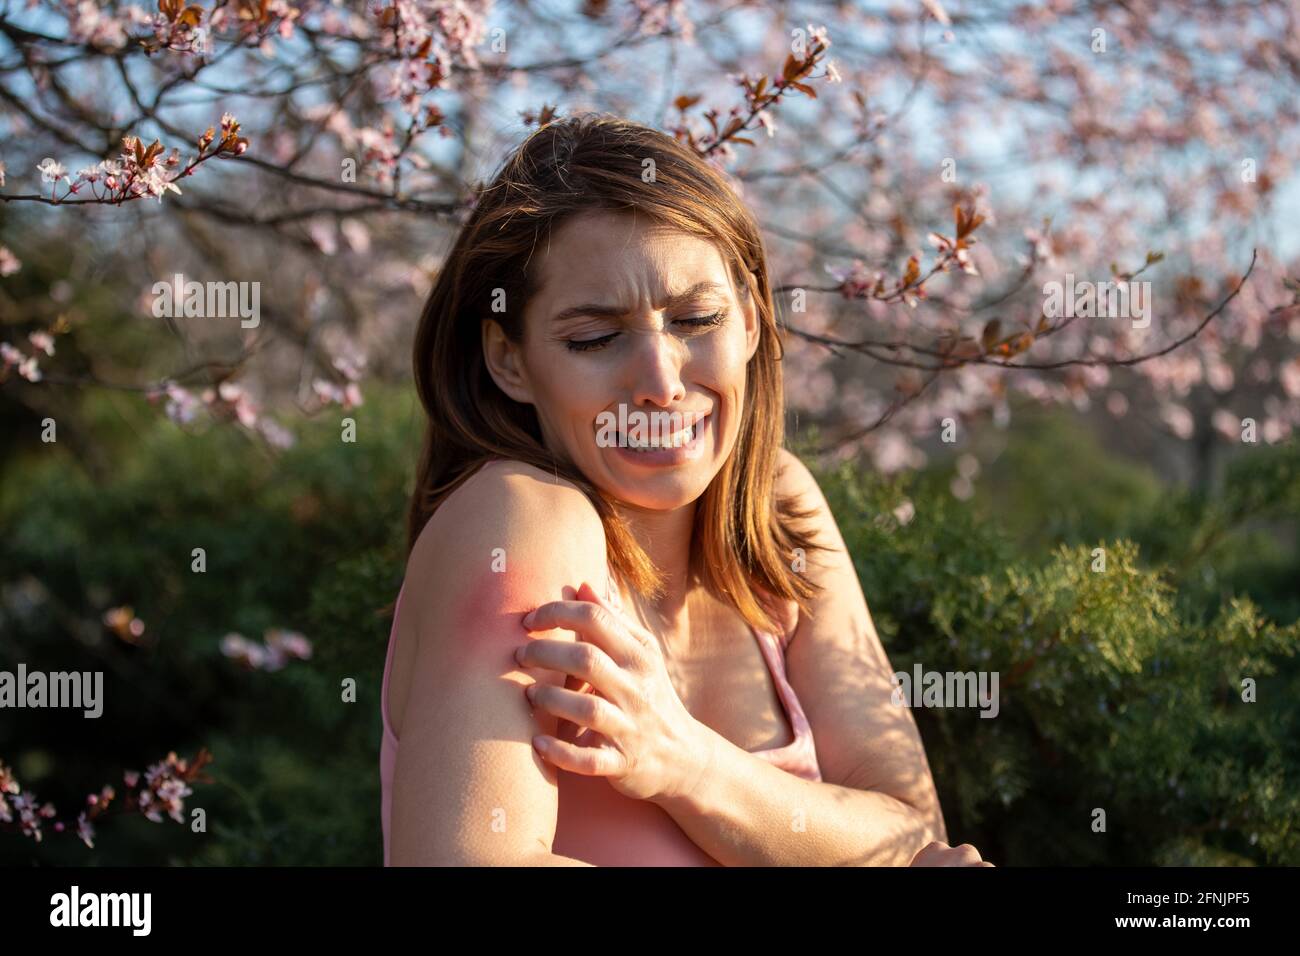 Hübsche junge Frau, die im Frühling neben einem blühenden Baum im Park den Arm kratzt. Rötung und juckende Haut als allergische Reaktion Stockfoto